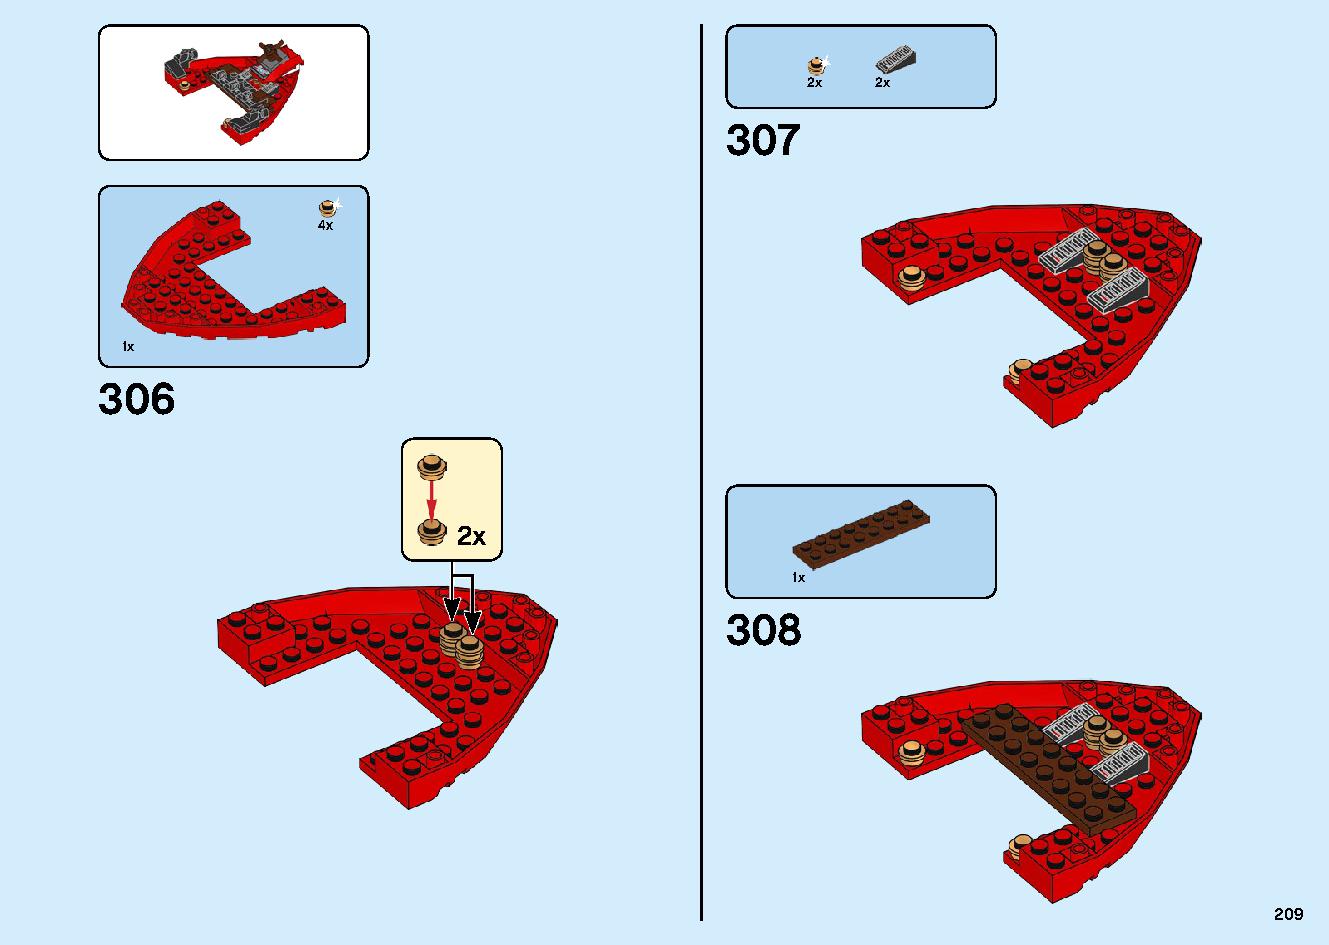 陸上戦艦バウンティ号 70677 レゴの商品情報 レゴの説明書・組立方法 209 page